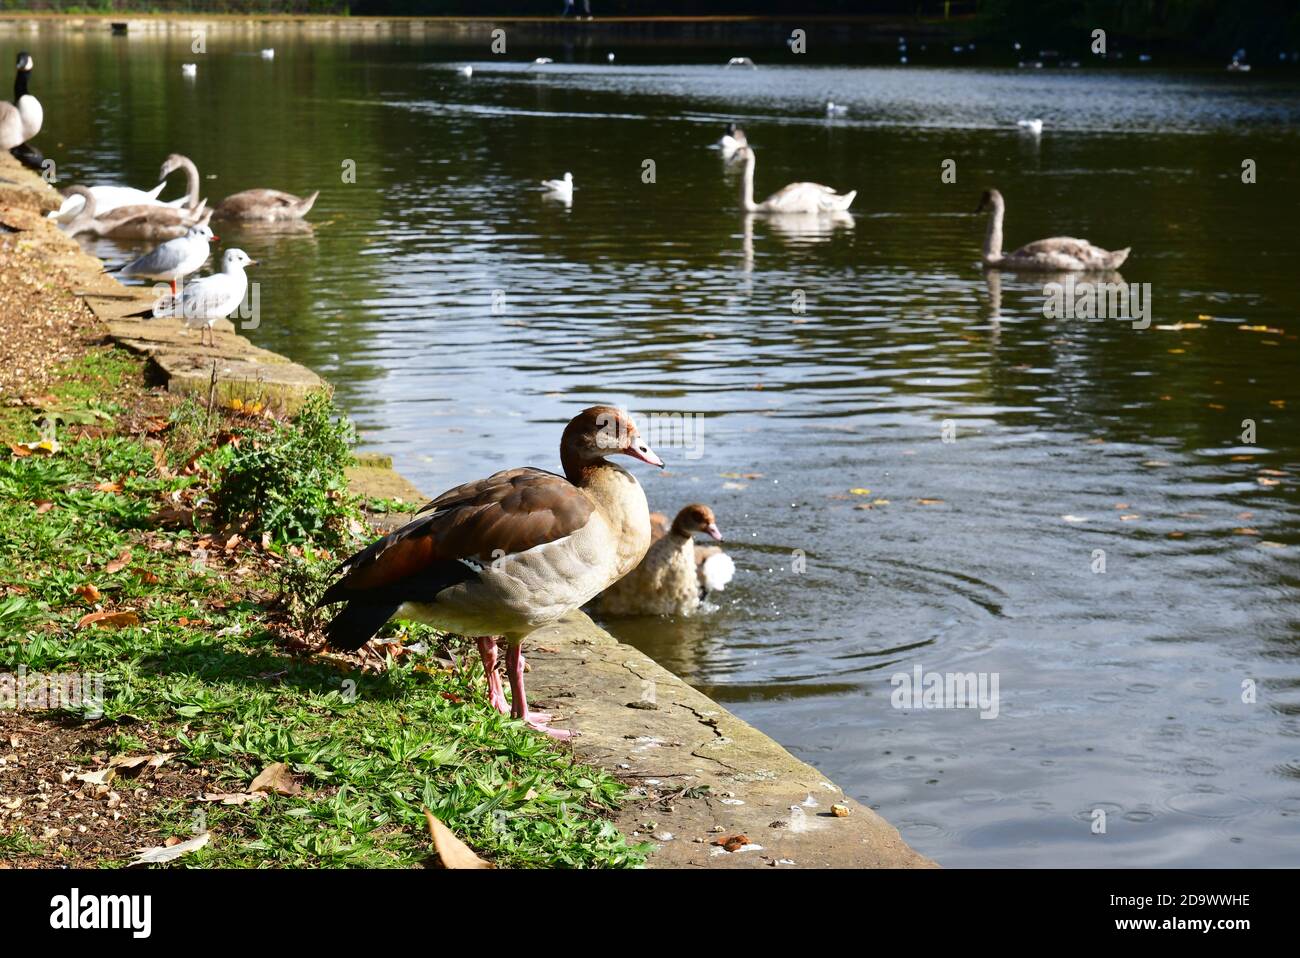 Oies égyptiennes et autres oiseaux aquatiques, profitant de l'eau à Osterley Park, Isleworth, Hounslow, Londres, Royaume-Uni Banque D'Images